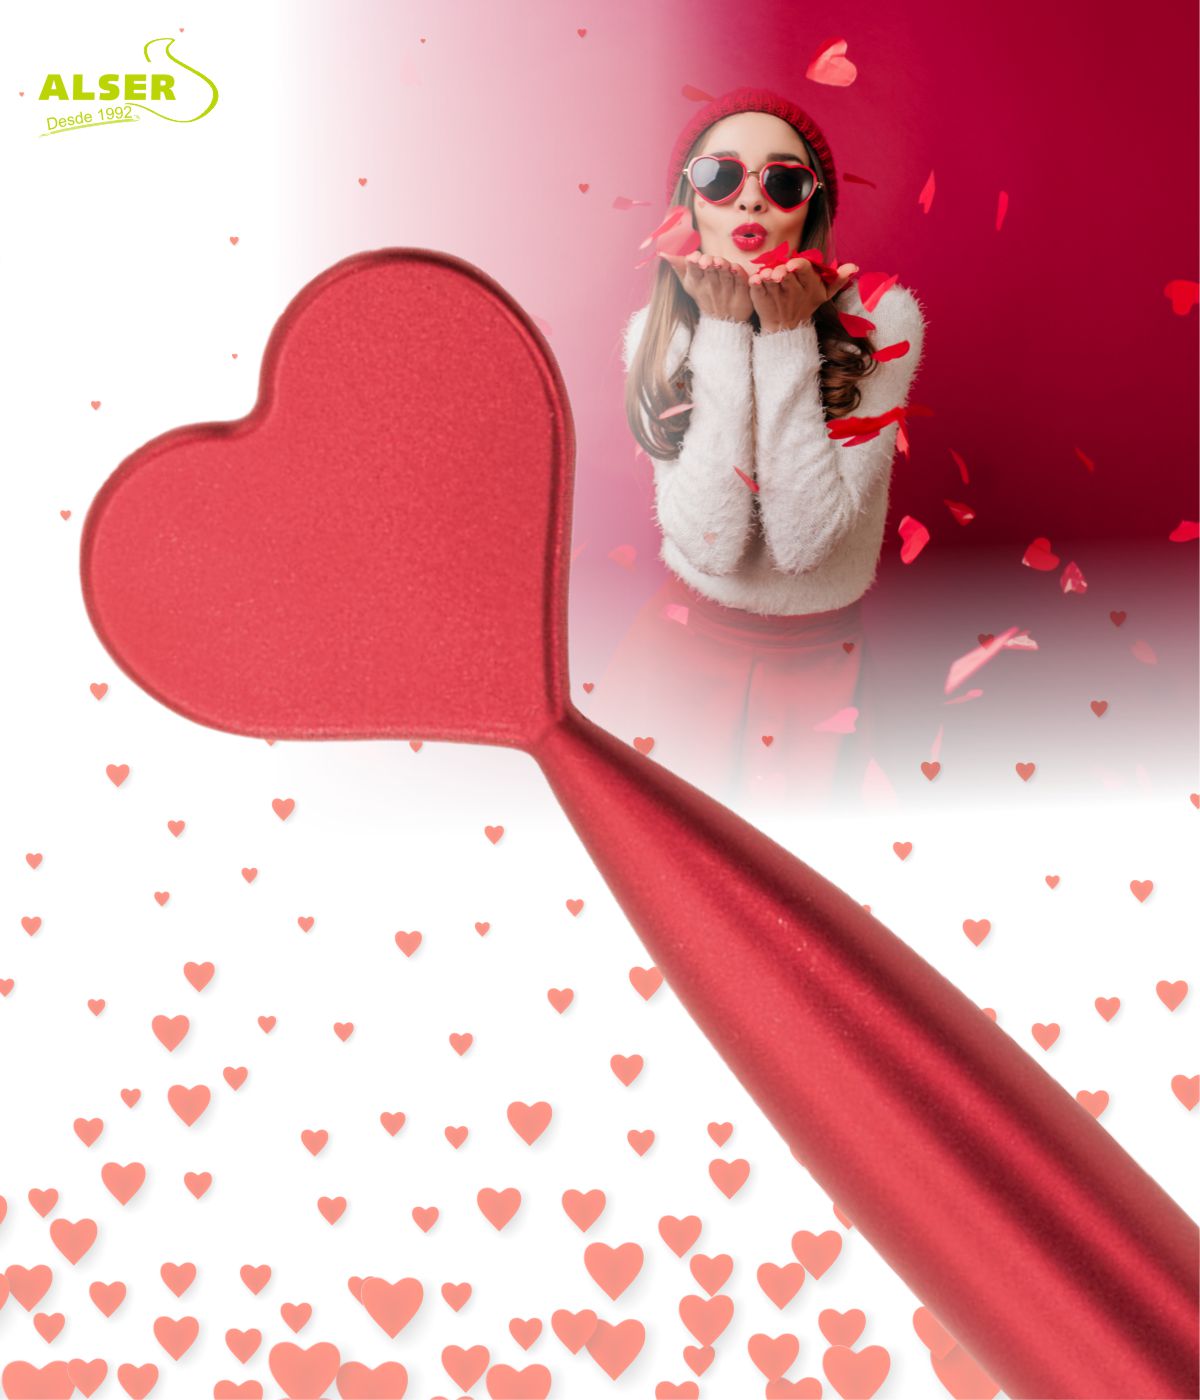 Boligrafo San Valentín detalle corazon